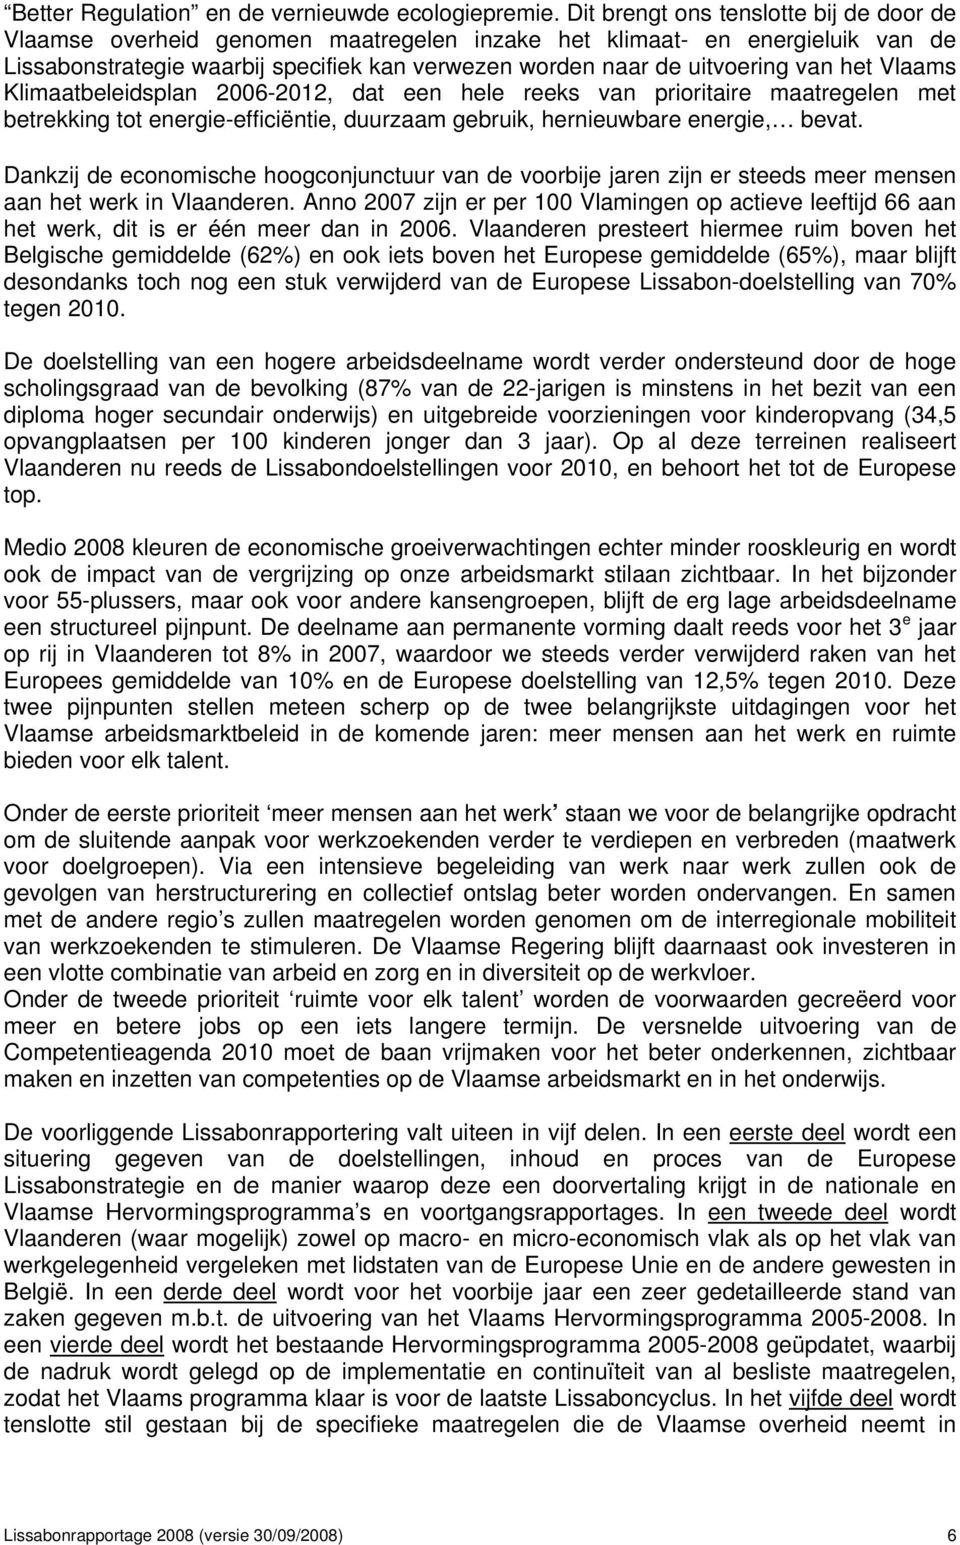 het Vlaams Klimaatbeleidsplan 2006-2012, dat een hele reeks van prioritaire maatregelen met betrekking tot energie-efficiëntie, duurzaam gebruik, hernieuwbare energie, bevat.